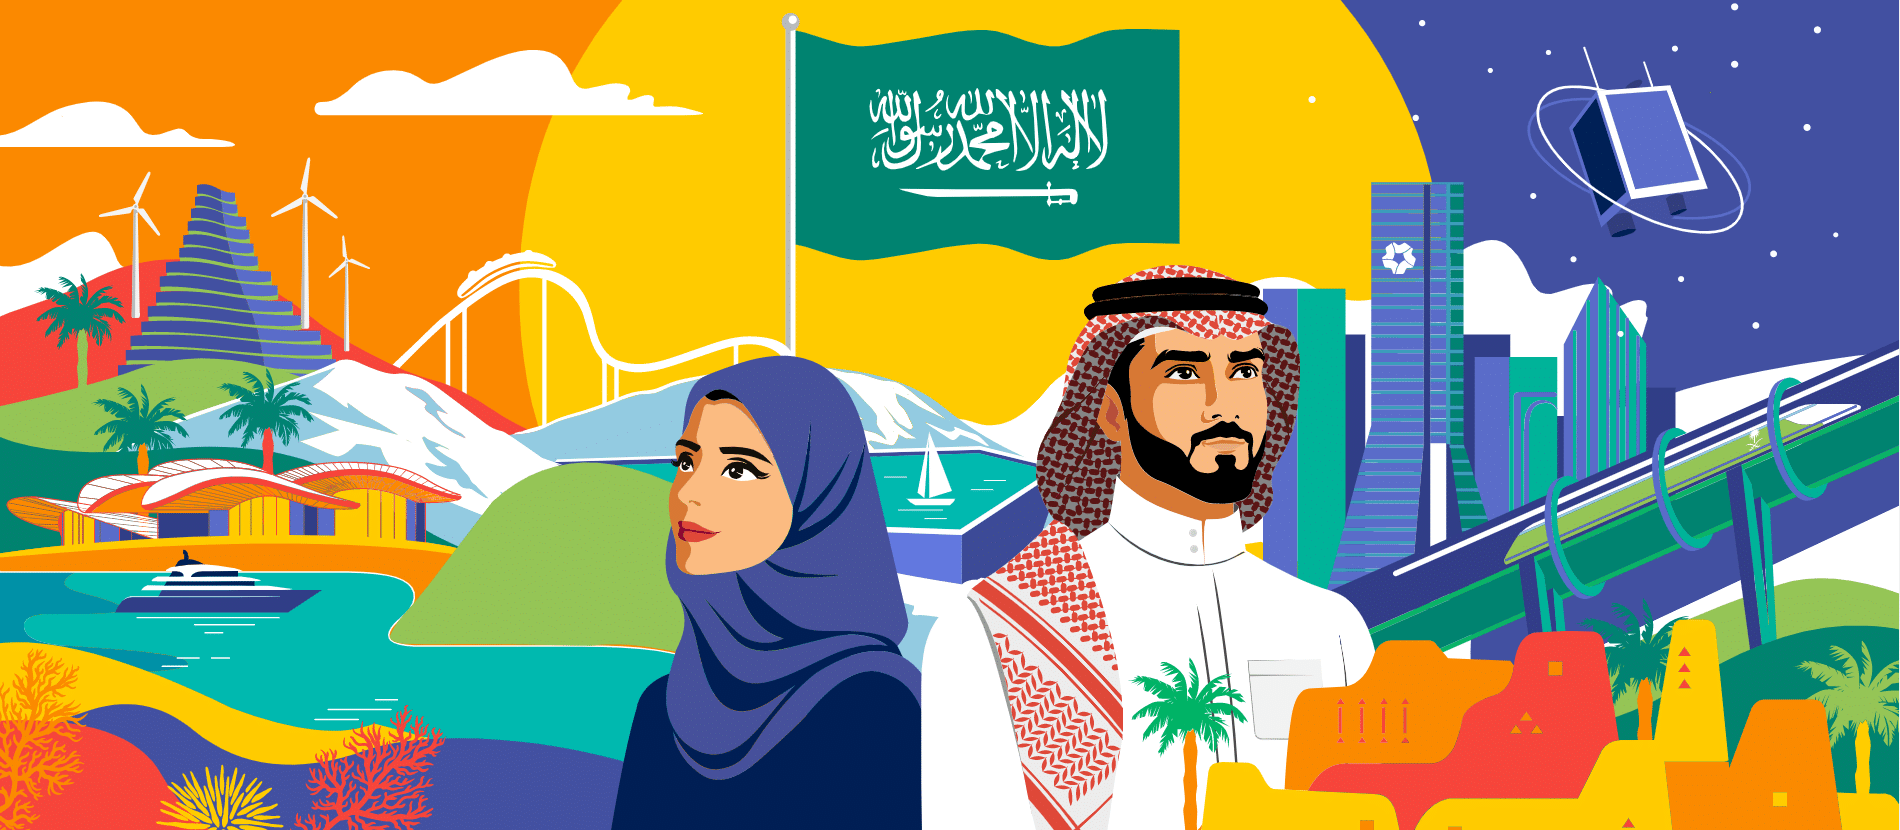 الموارد البشرية تزف بشرى سارة بشأن تعويض اجازة اليوم الوطني السعودي 93 للقطاع العام والخاص لعام 2023